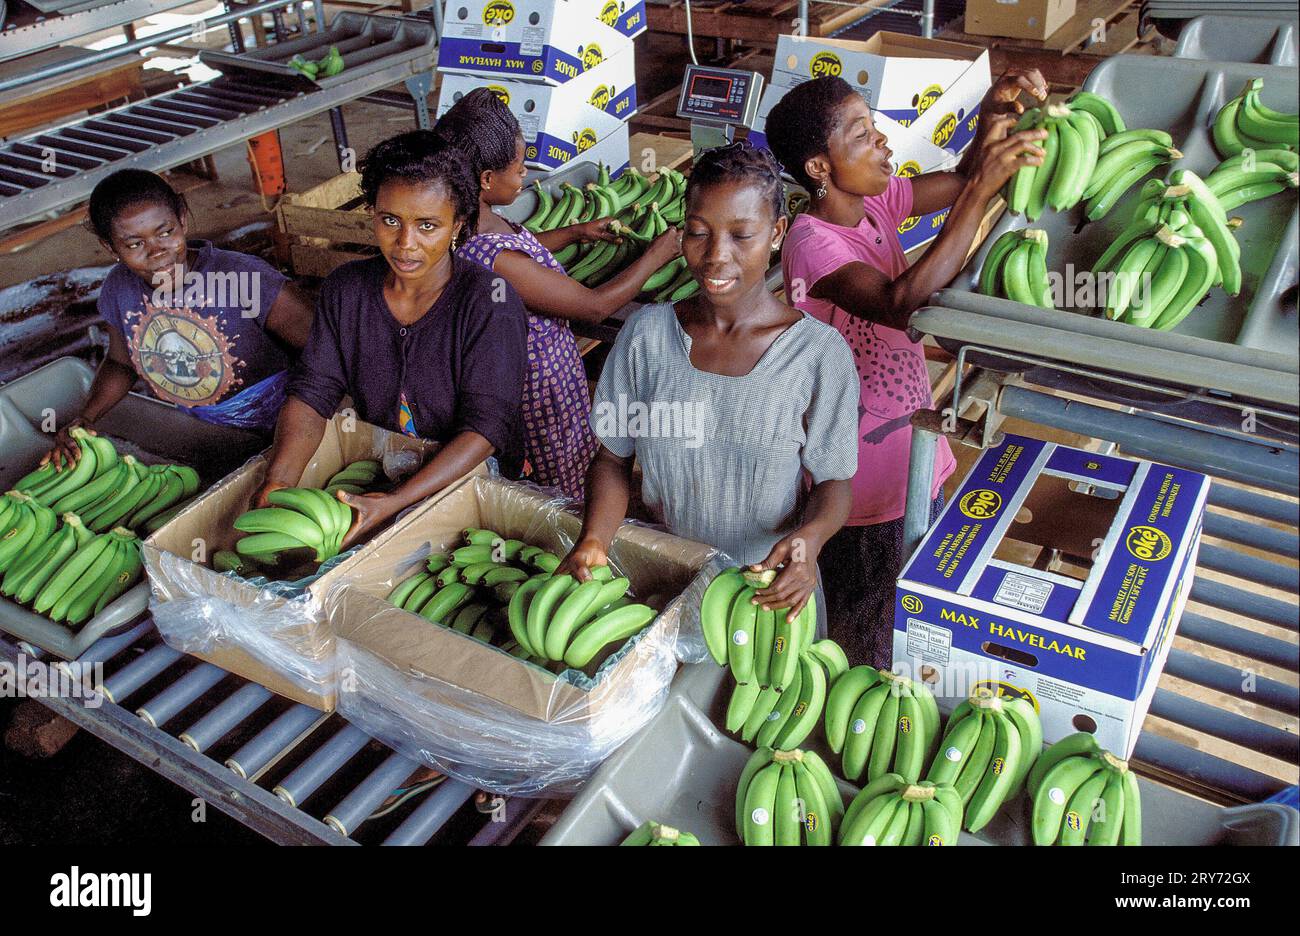 Ghana, nuova Akrade - in una piantagione di banane, le banane raccolte vengono lavate e confezionate in scatole per essere esportate in Europa. Foto Stock